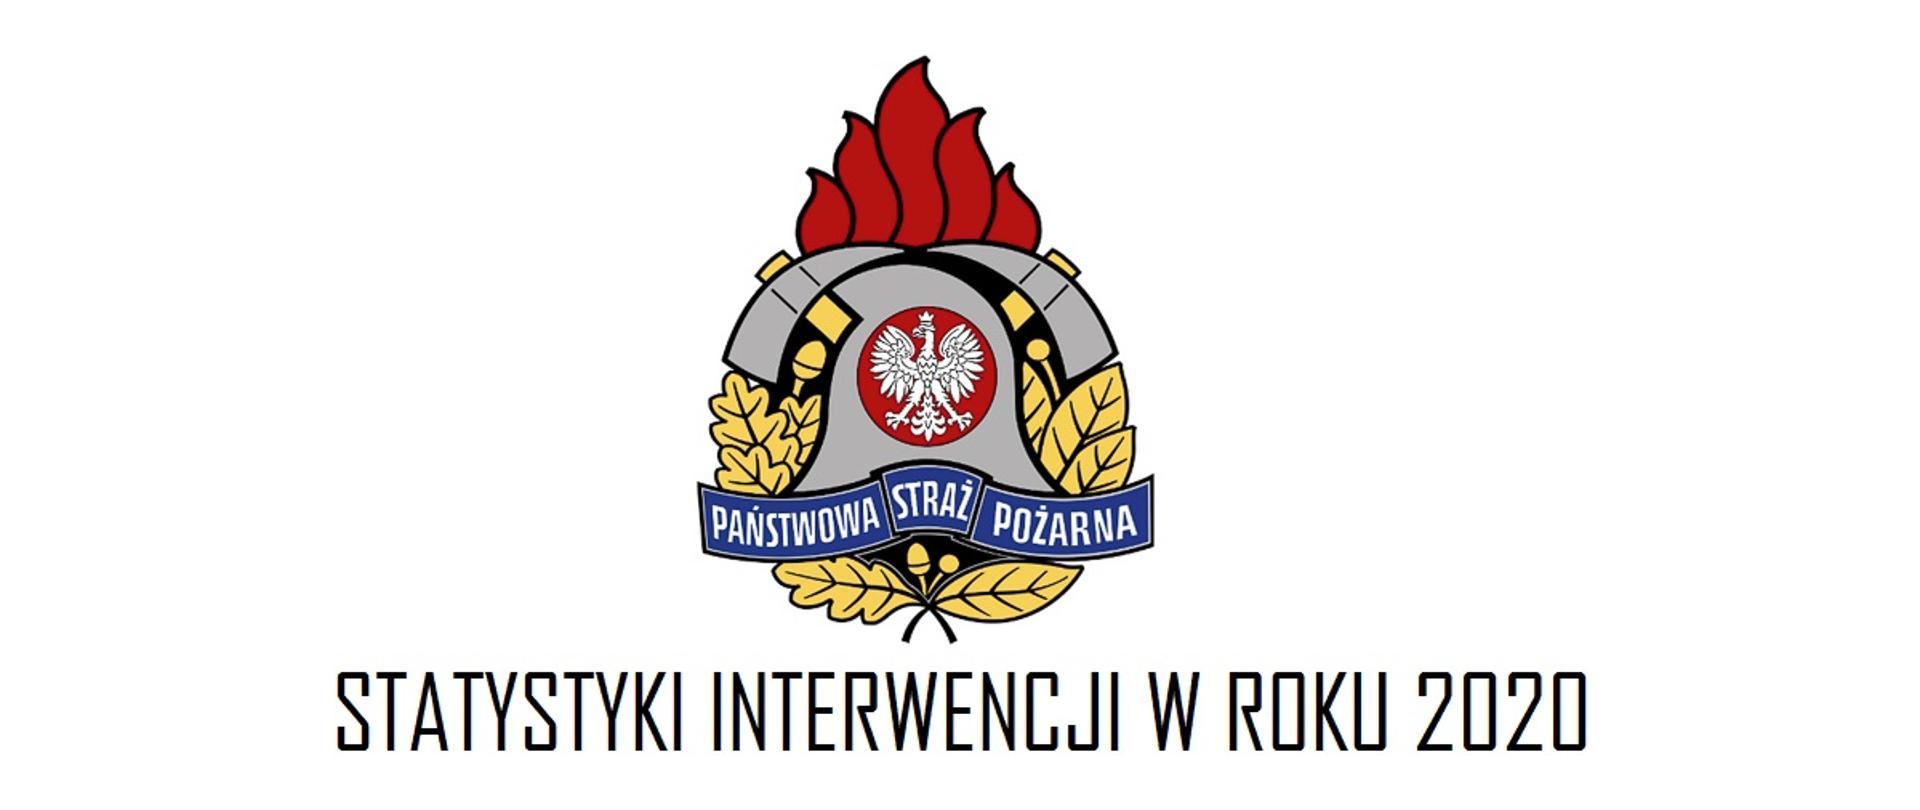  Logo Państwowej Straży Pożarnej oraz napis: Statystyki interwencji 2020.